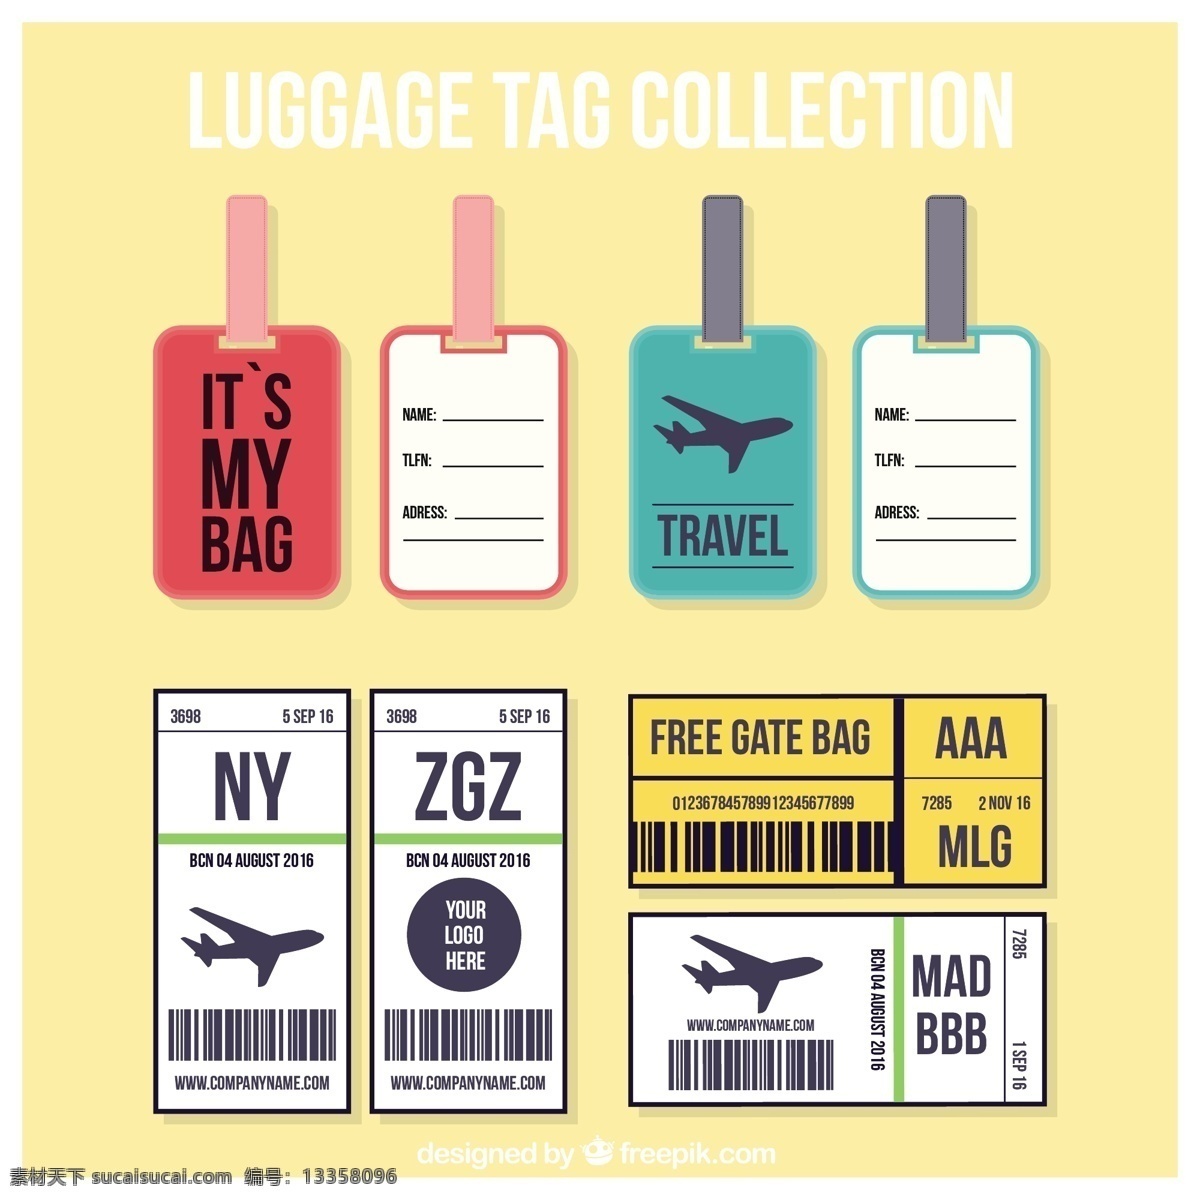 平面设计 中 旅行 标签 收集 旅游 贴纸 世界 机票 飞机 平面 度假 条码 假期 手提箱 行李